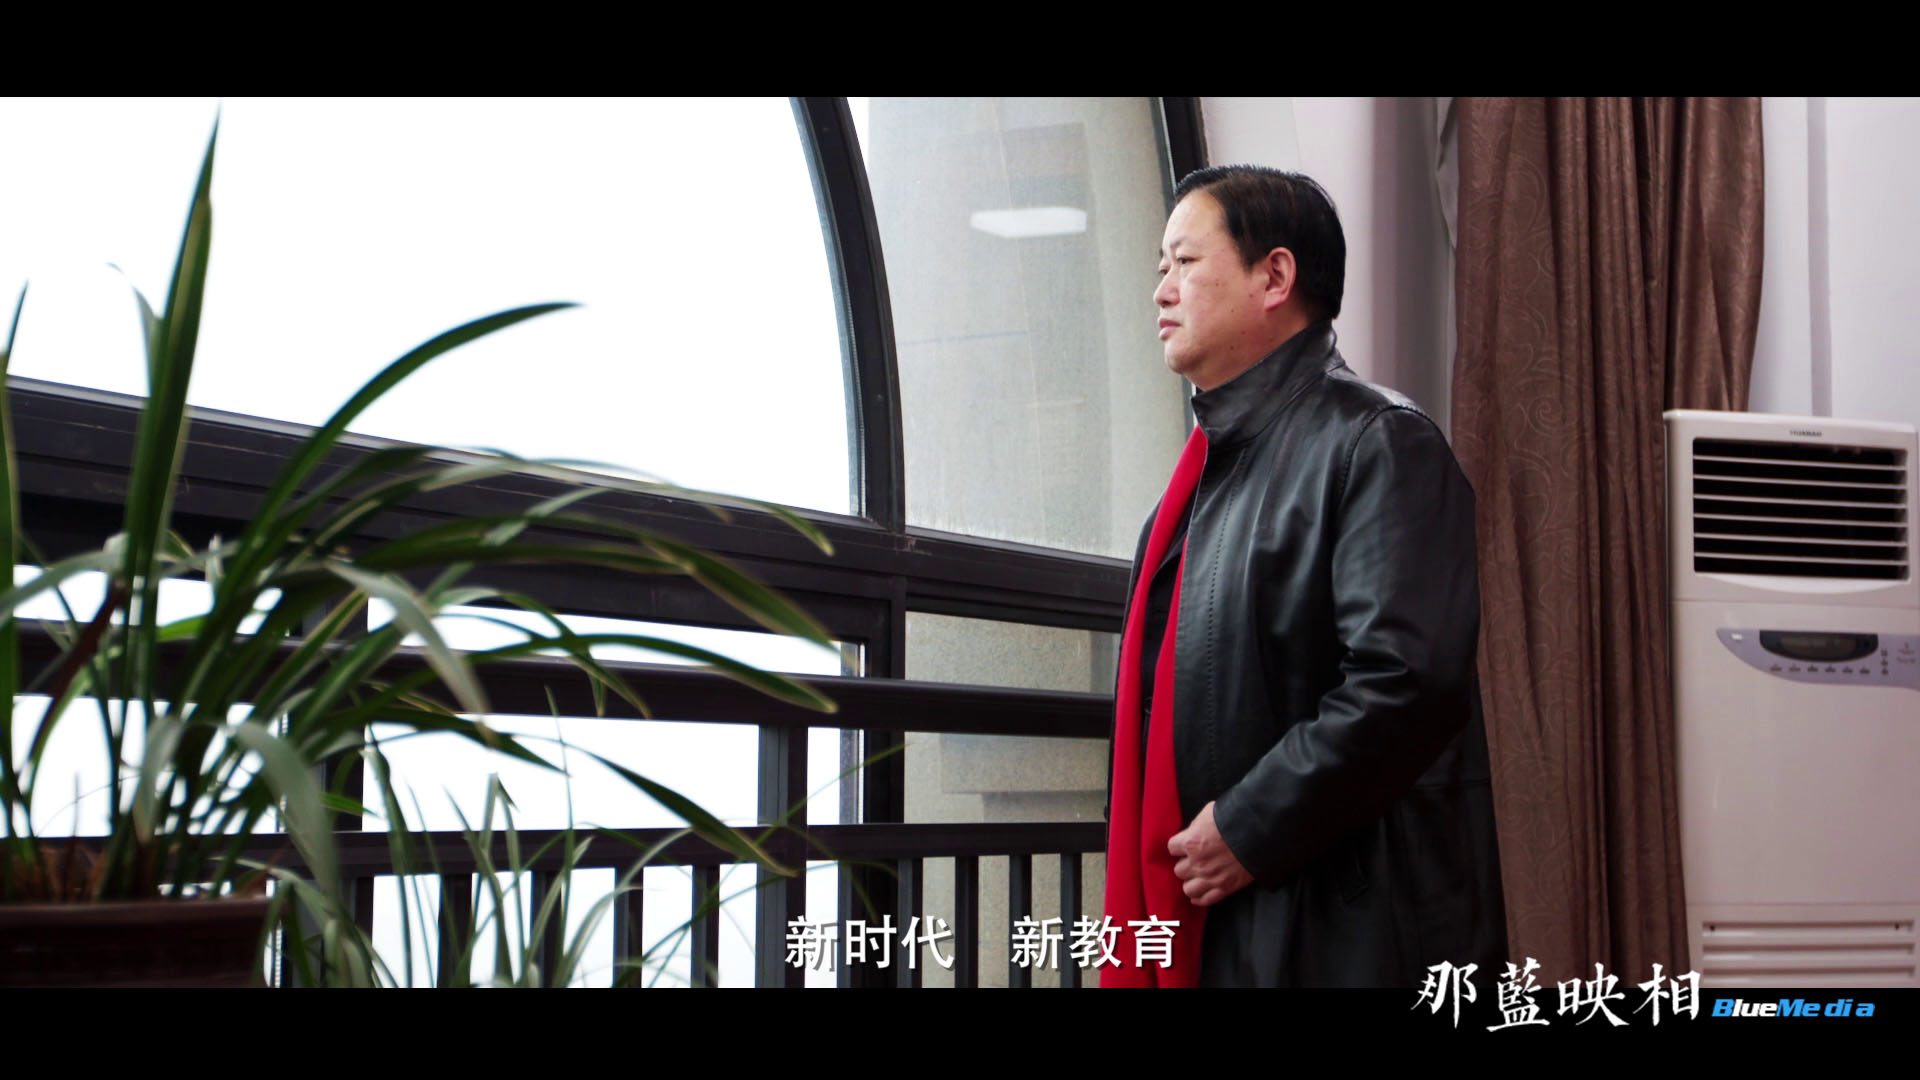 宣传片制作:奋斗-前进中的杭州新世纪